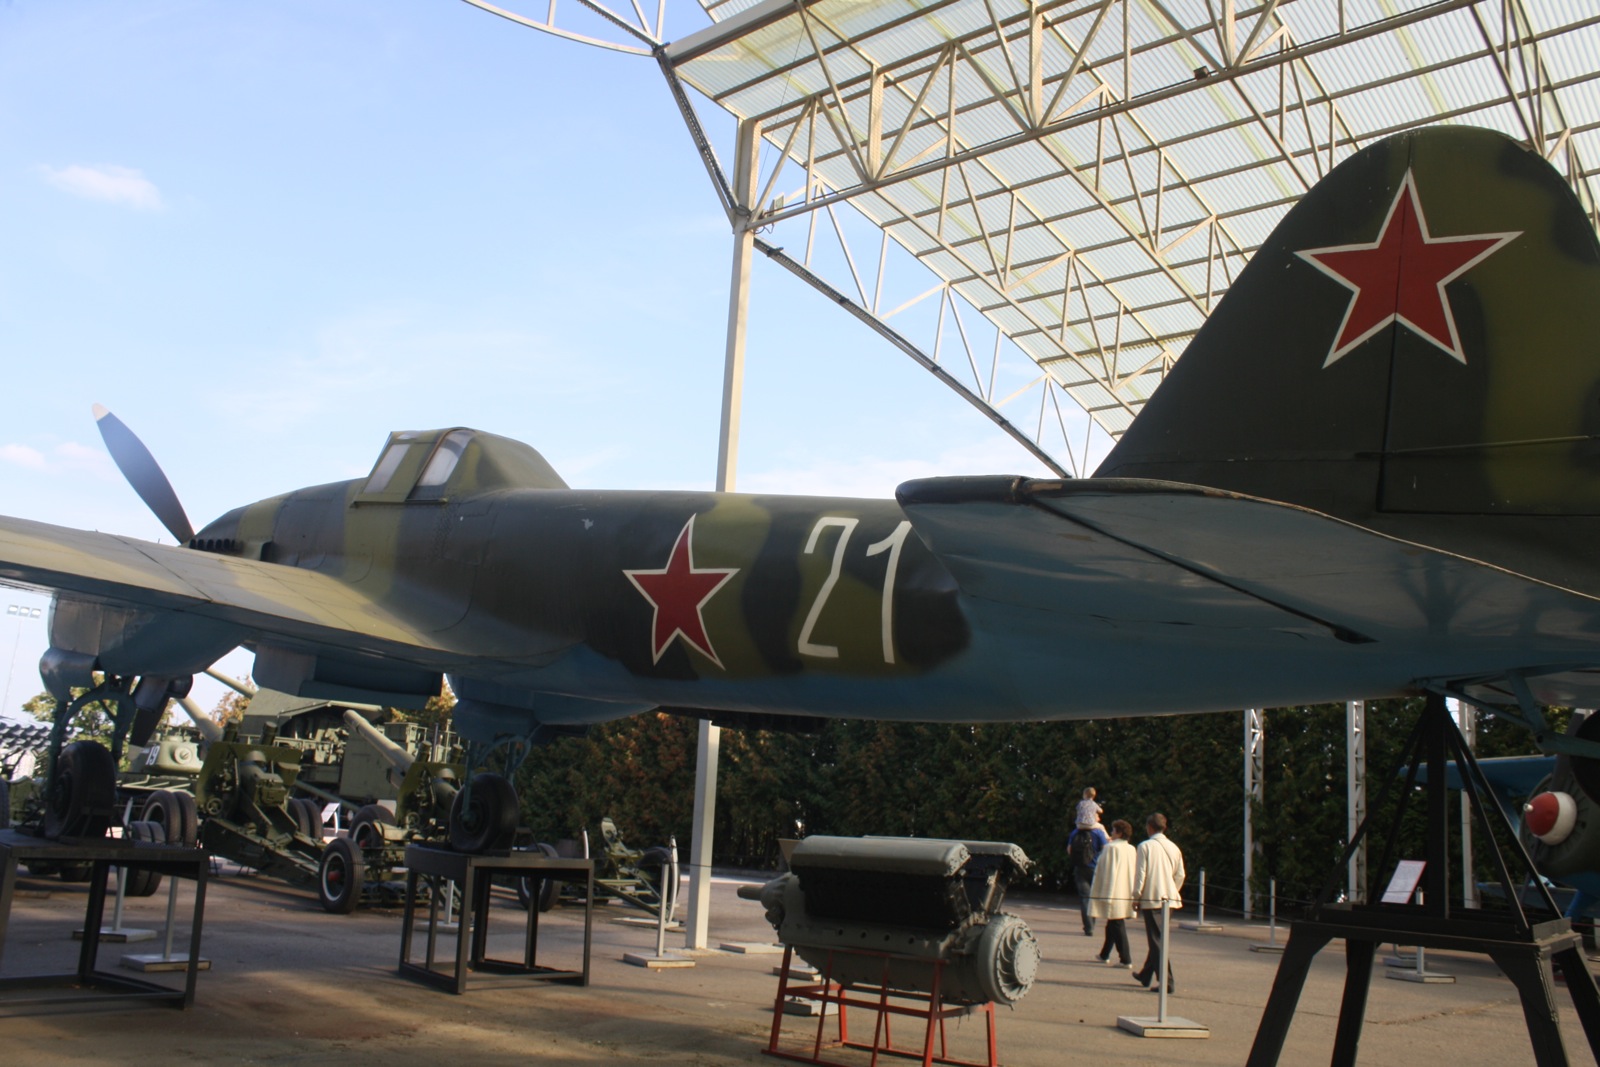 У одељењу за ваздухопловство представљена је збирка совјетских и америчких авиона.